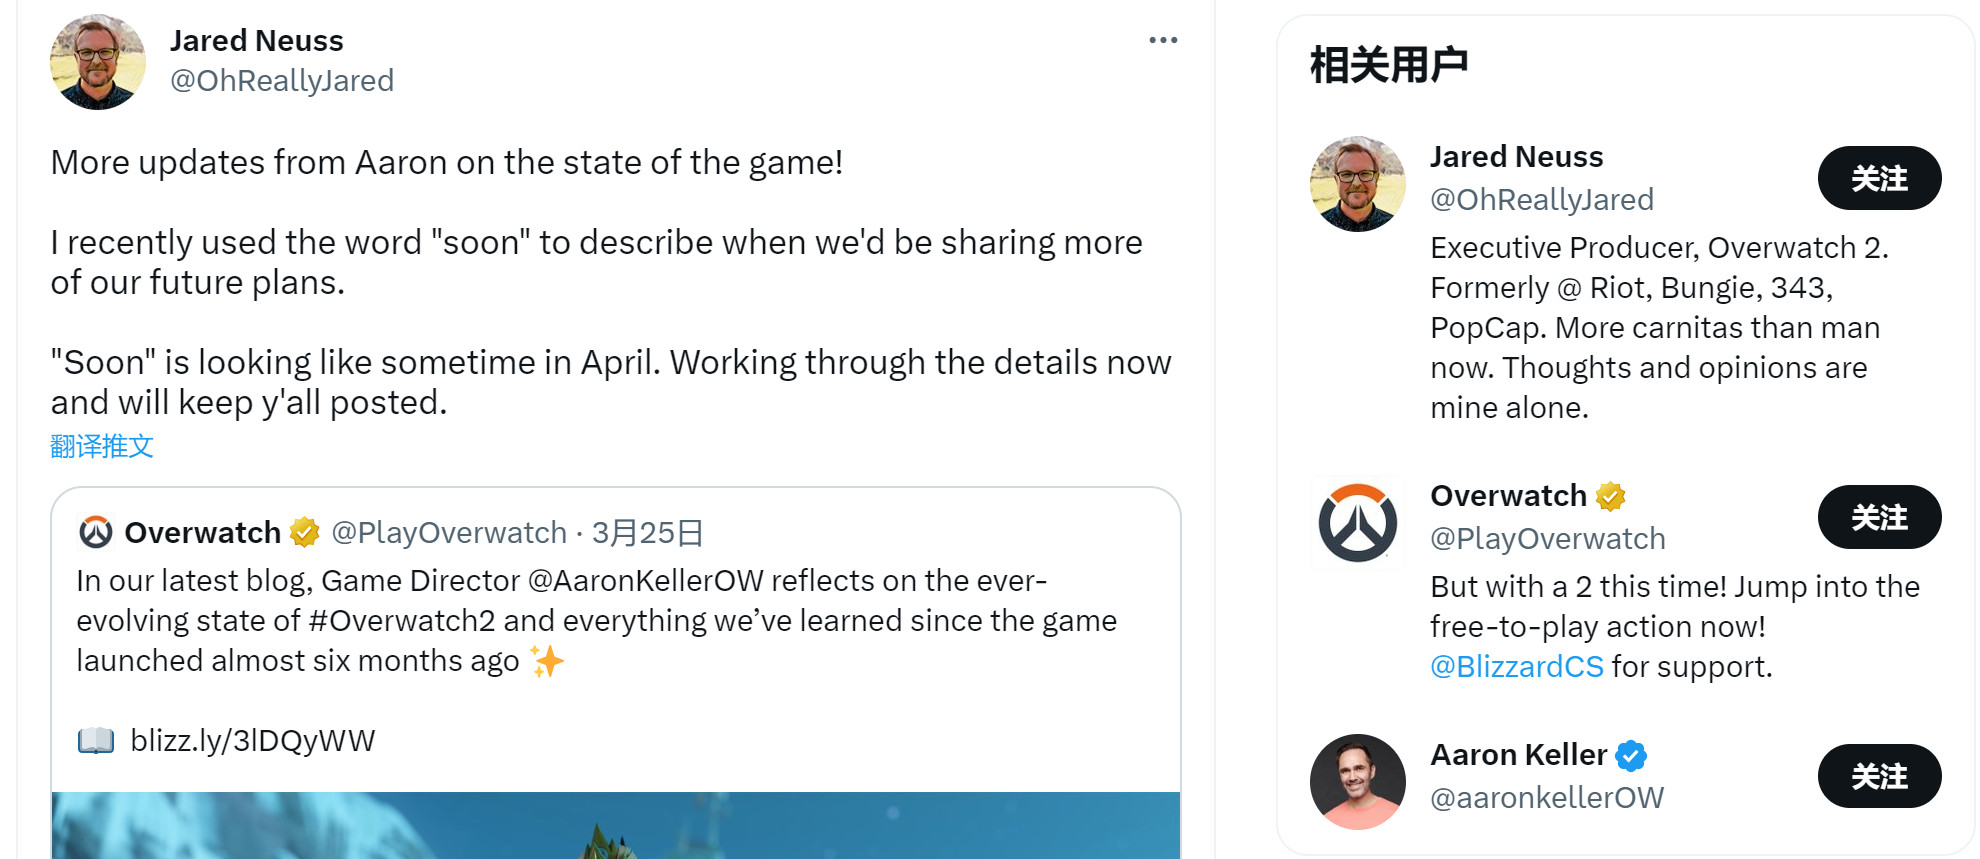 《守望先锋2》团队计划在4月公布未来更新细节 二次世界 第2张